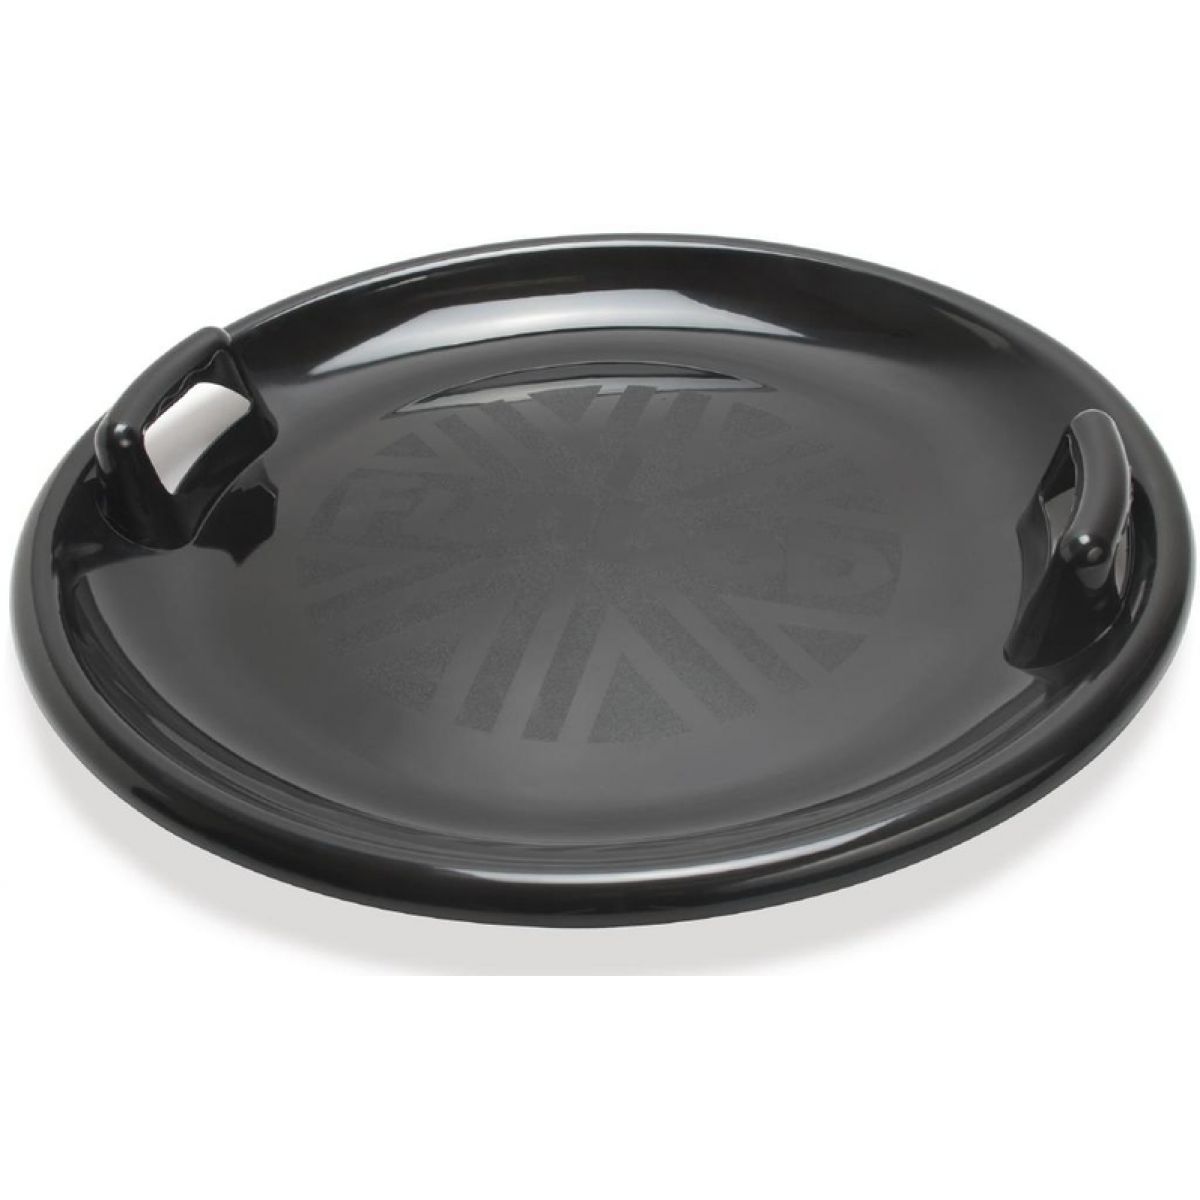 Dantoy Zábavný talíř na sníh s držadly - průměr 63 cm - Černá